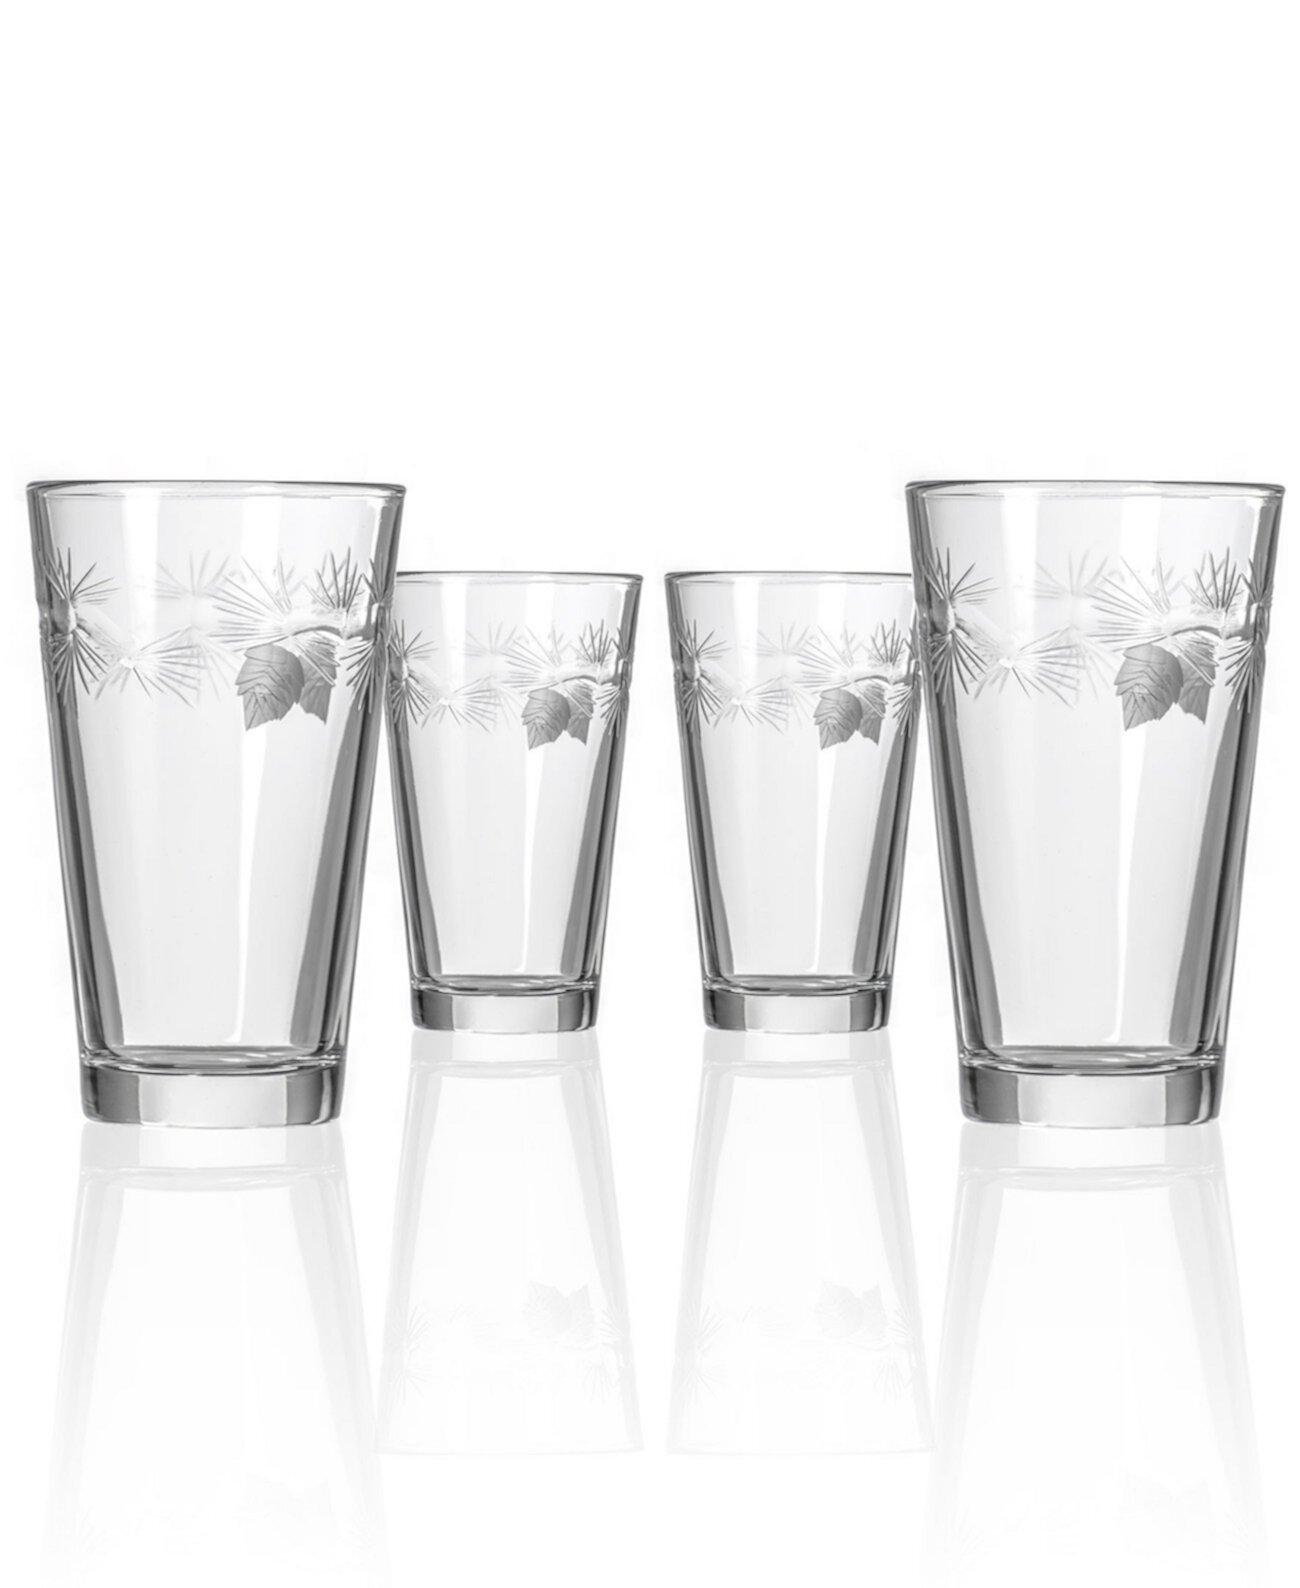 Стакан для пинты ледяной сосны 16 унций - набор из 4 стаканов Rolf Glass